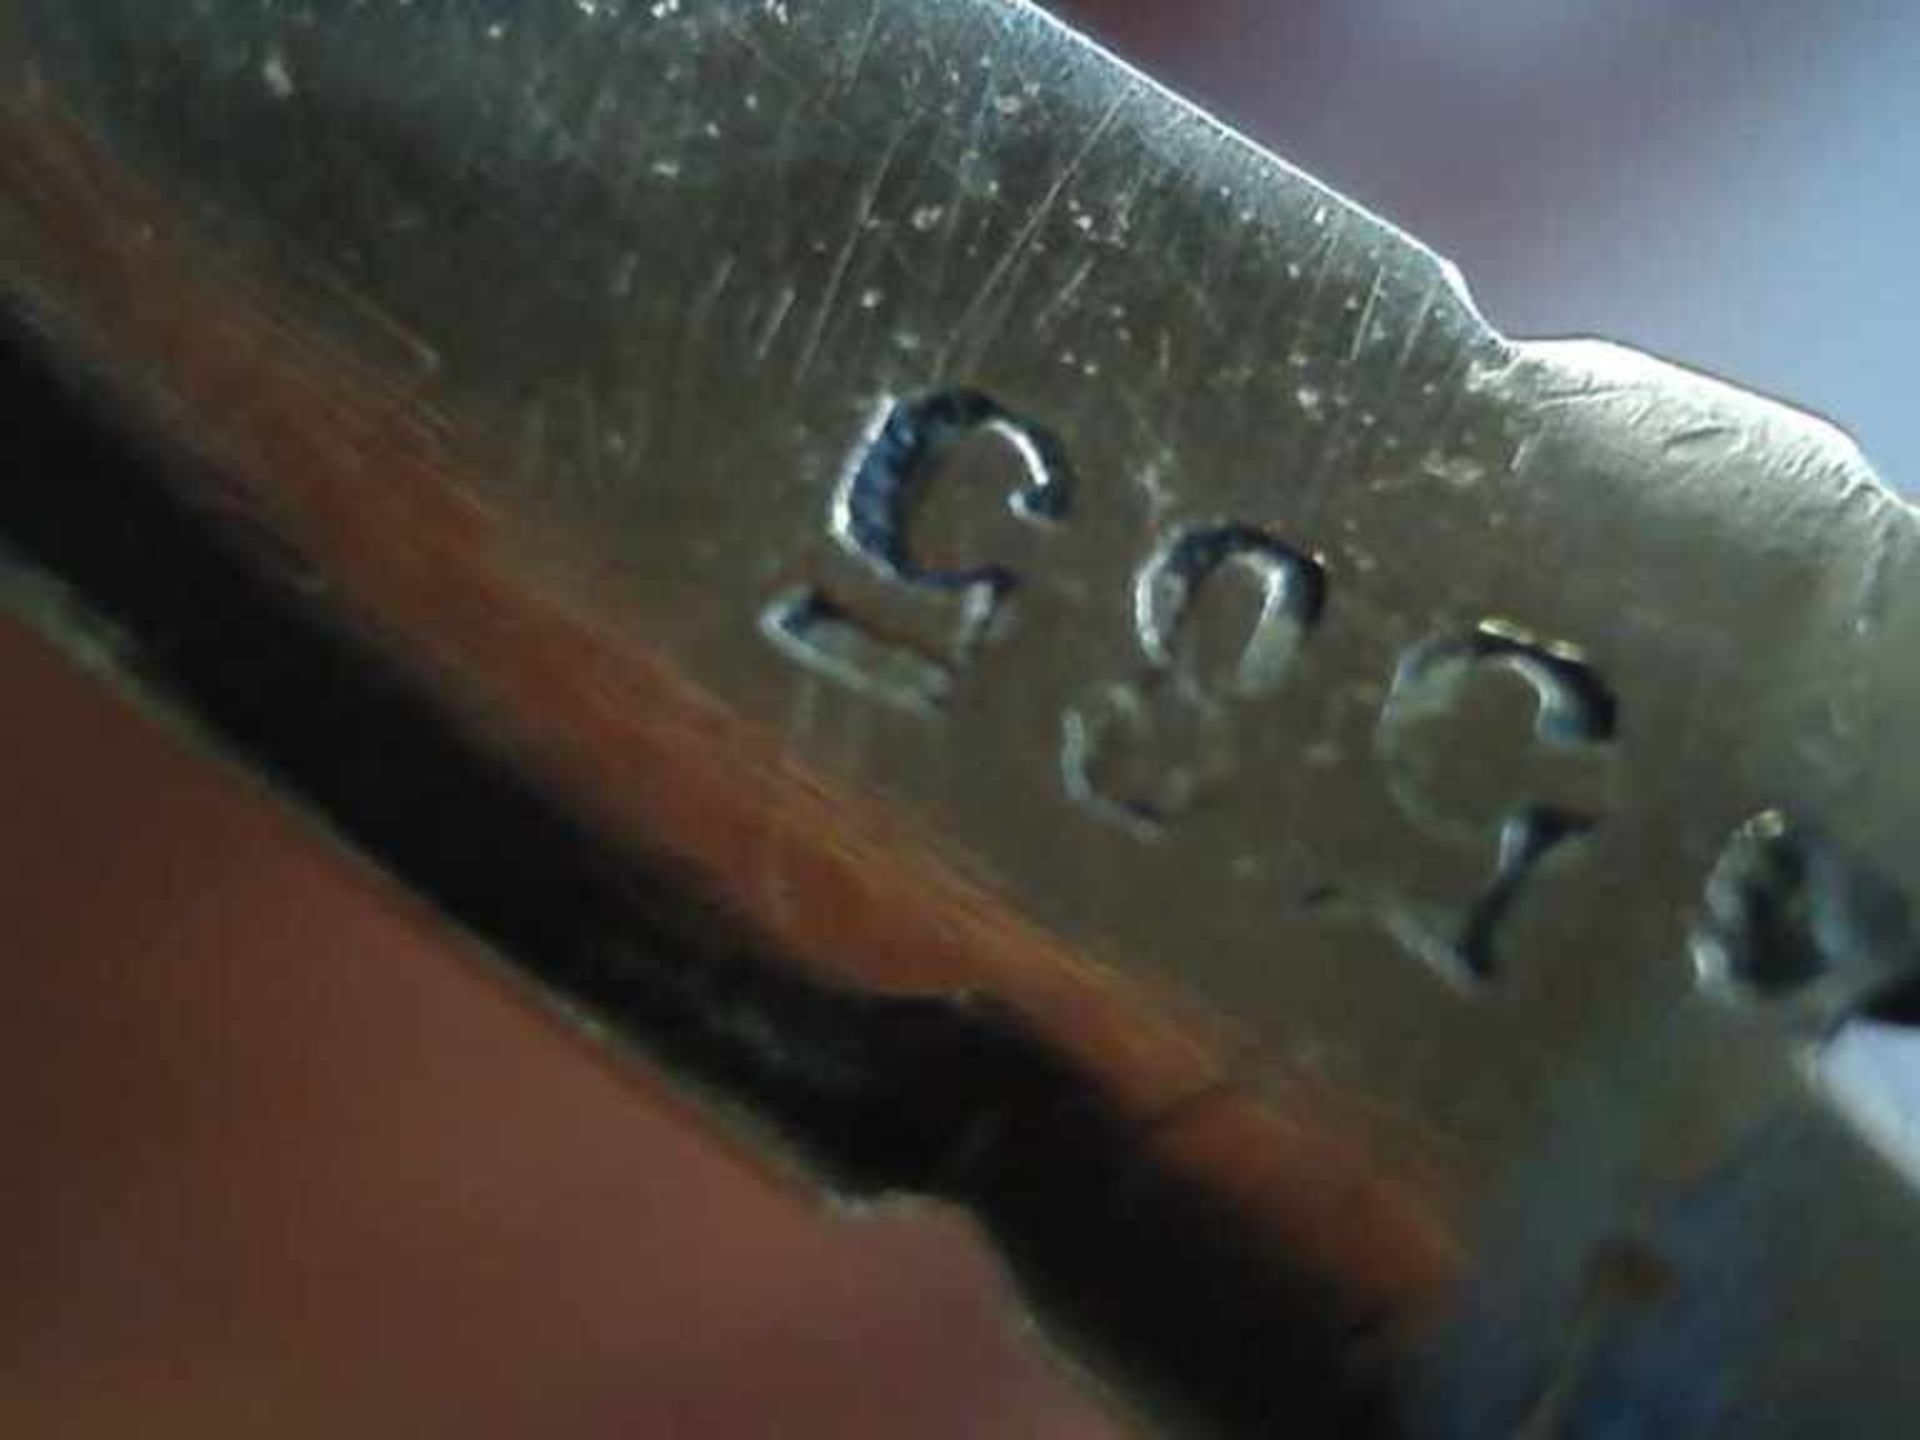 Damenring 585er RG, 2,9 g, runder durchbrochener Ringkopf mit geschliffenen Granaten besetzt, RG 53 - Image 2 of 2